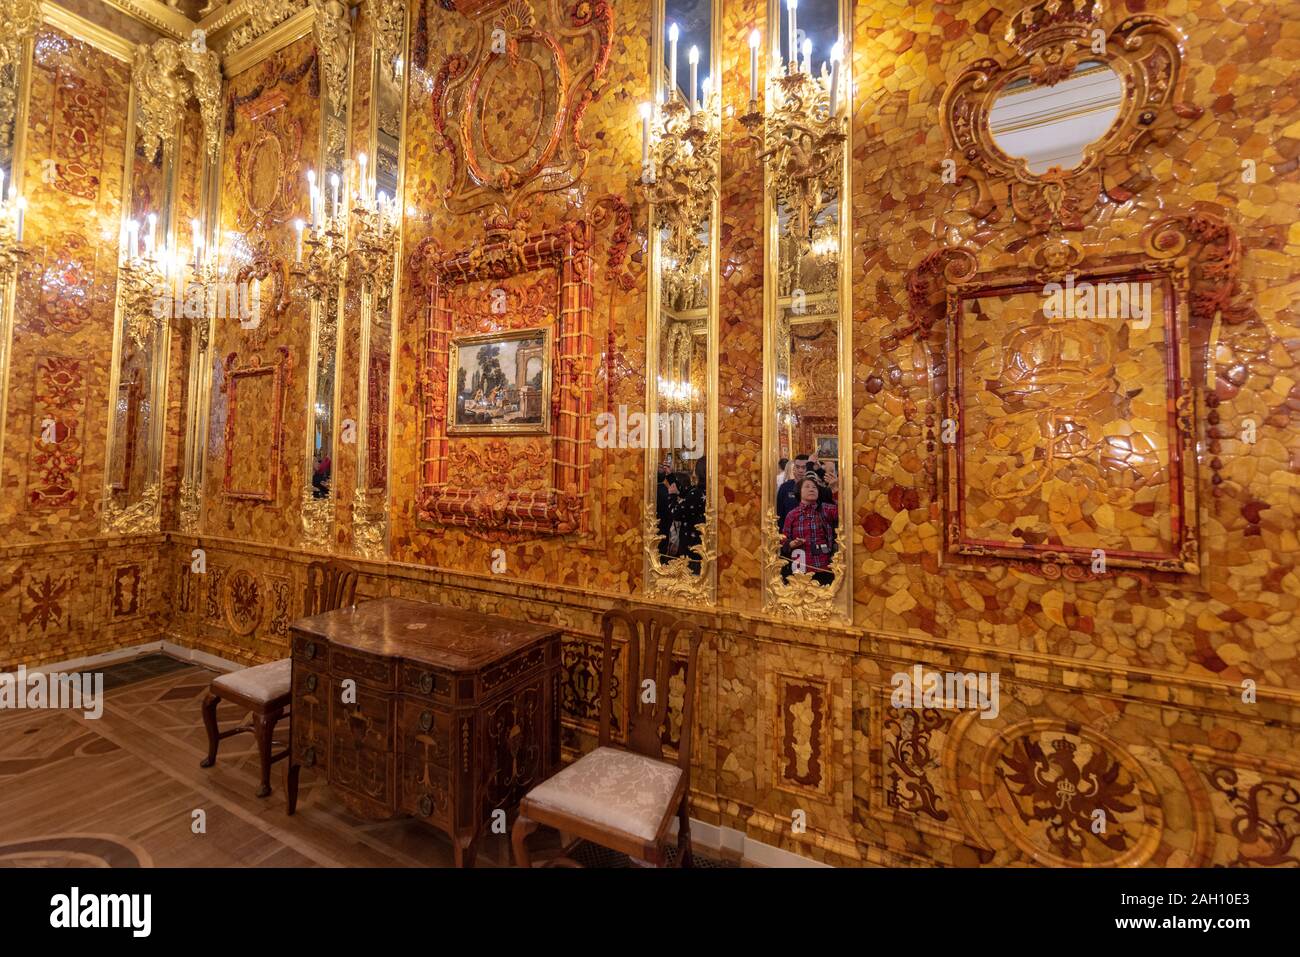 Tsarskoye Selo (Pushkin), San Pietroburgo, Russia. Interno barocco dorato del Palazzo di Caterina, situato nella città di Tsarskoe selo. Foto Stock